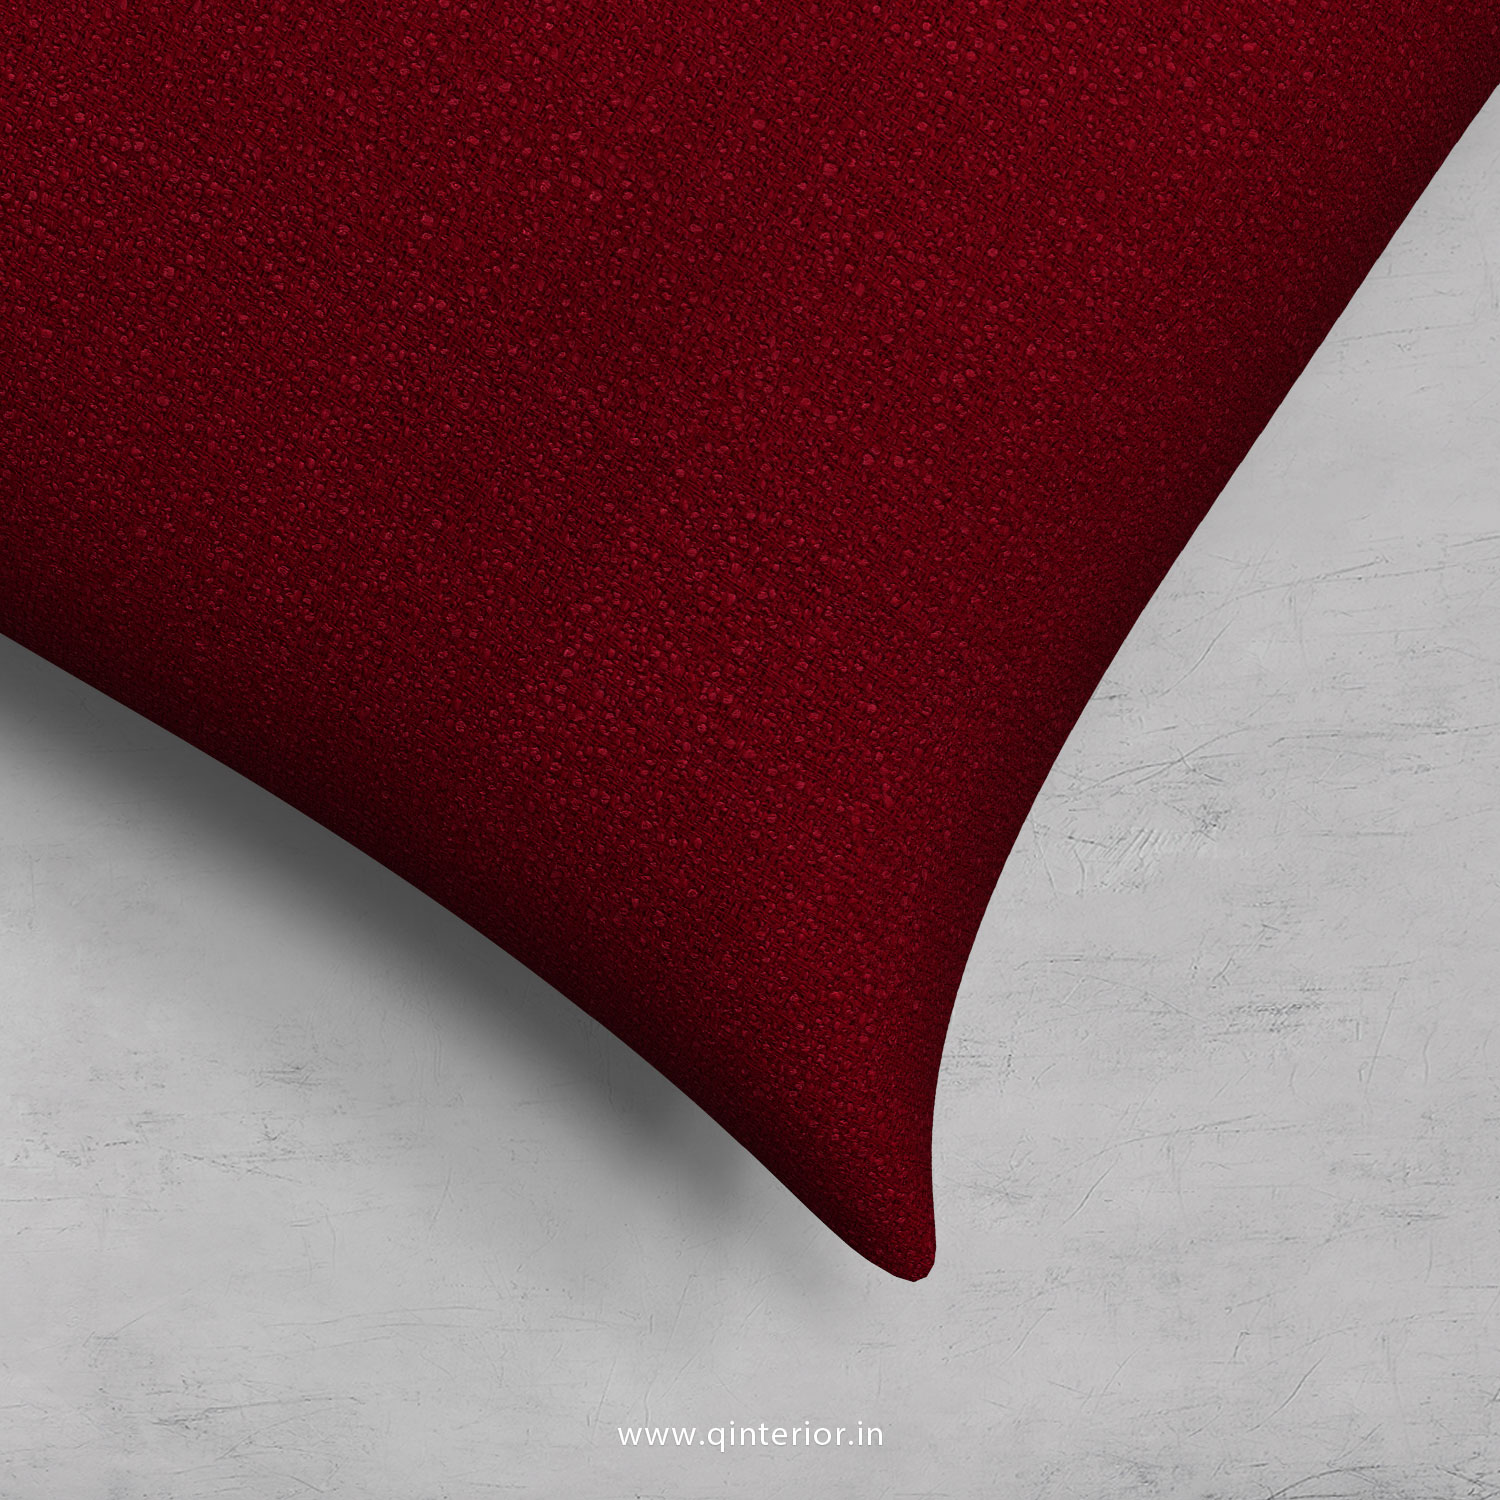 Cushion With Cushion Cover in Bargello - CUS002 BG08